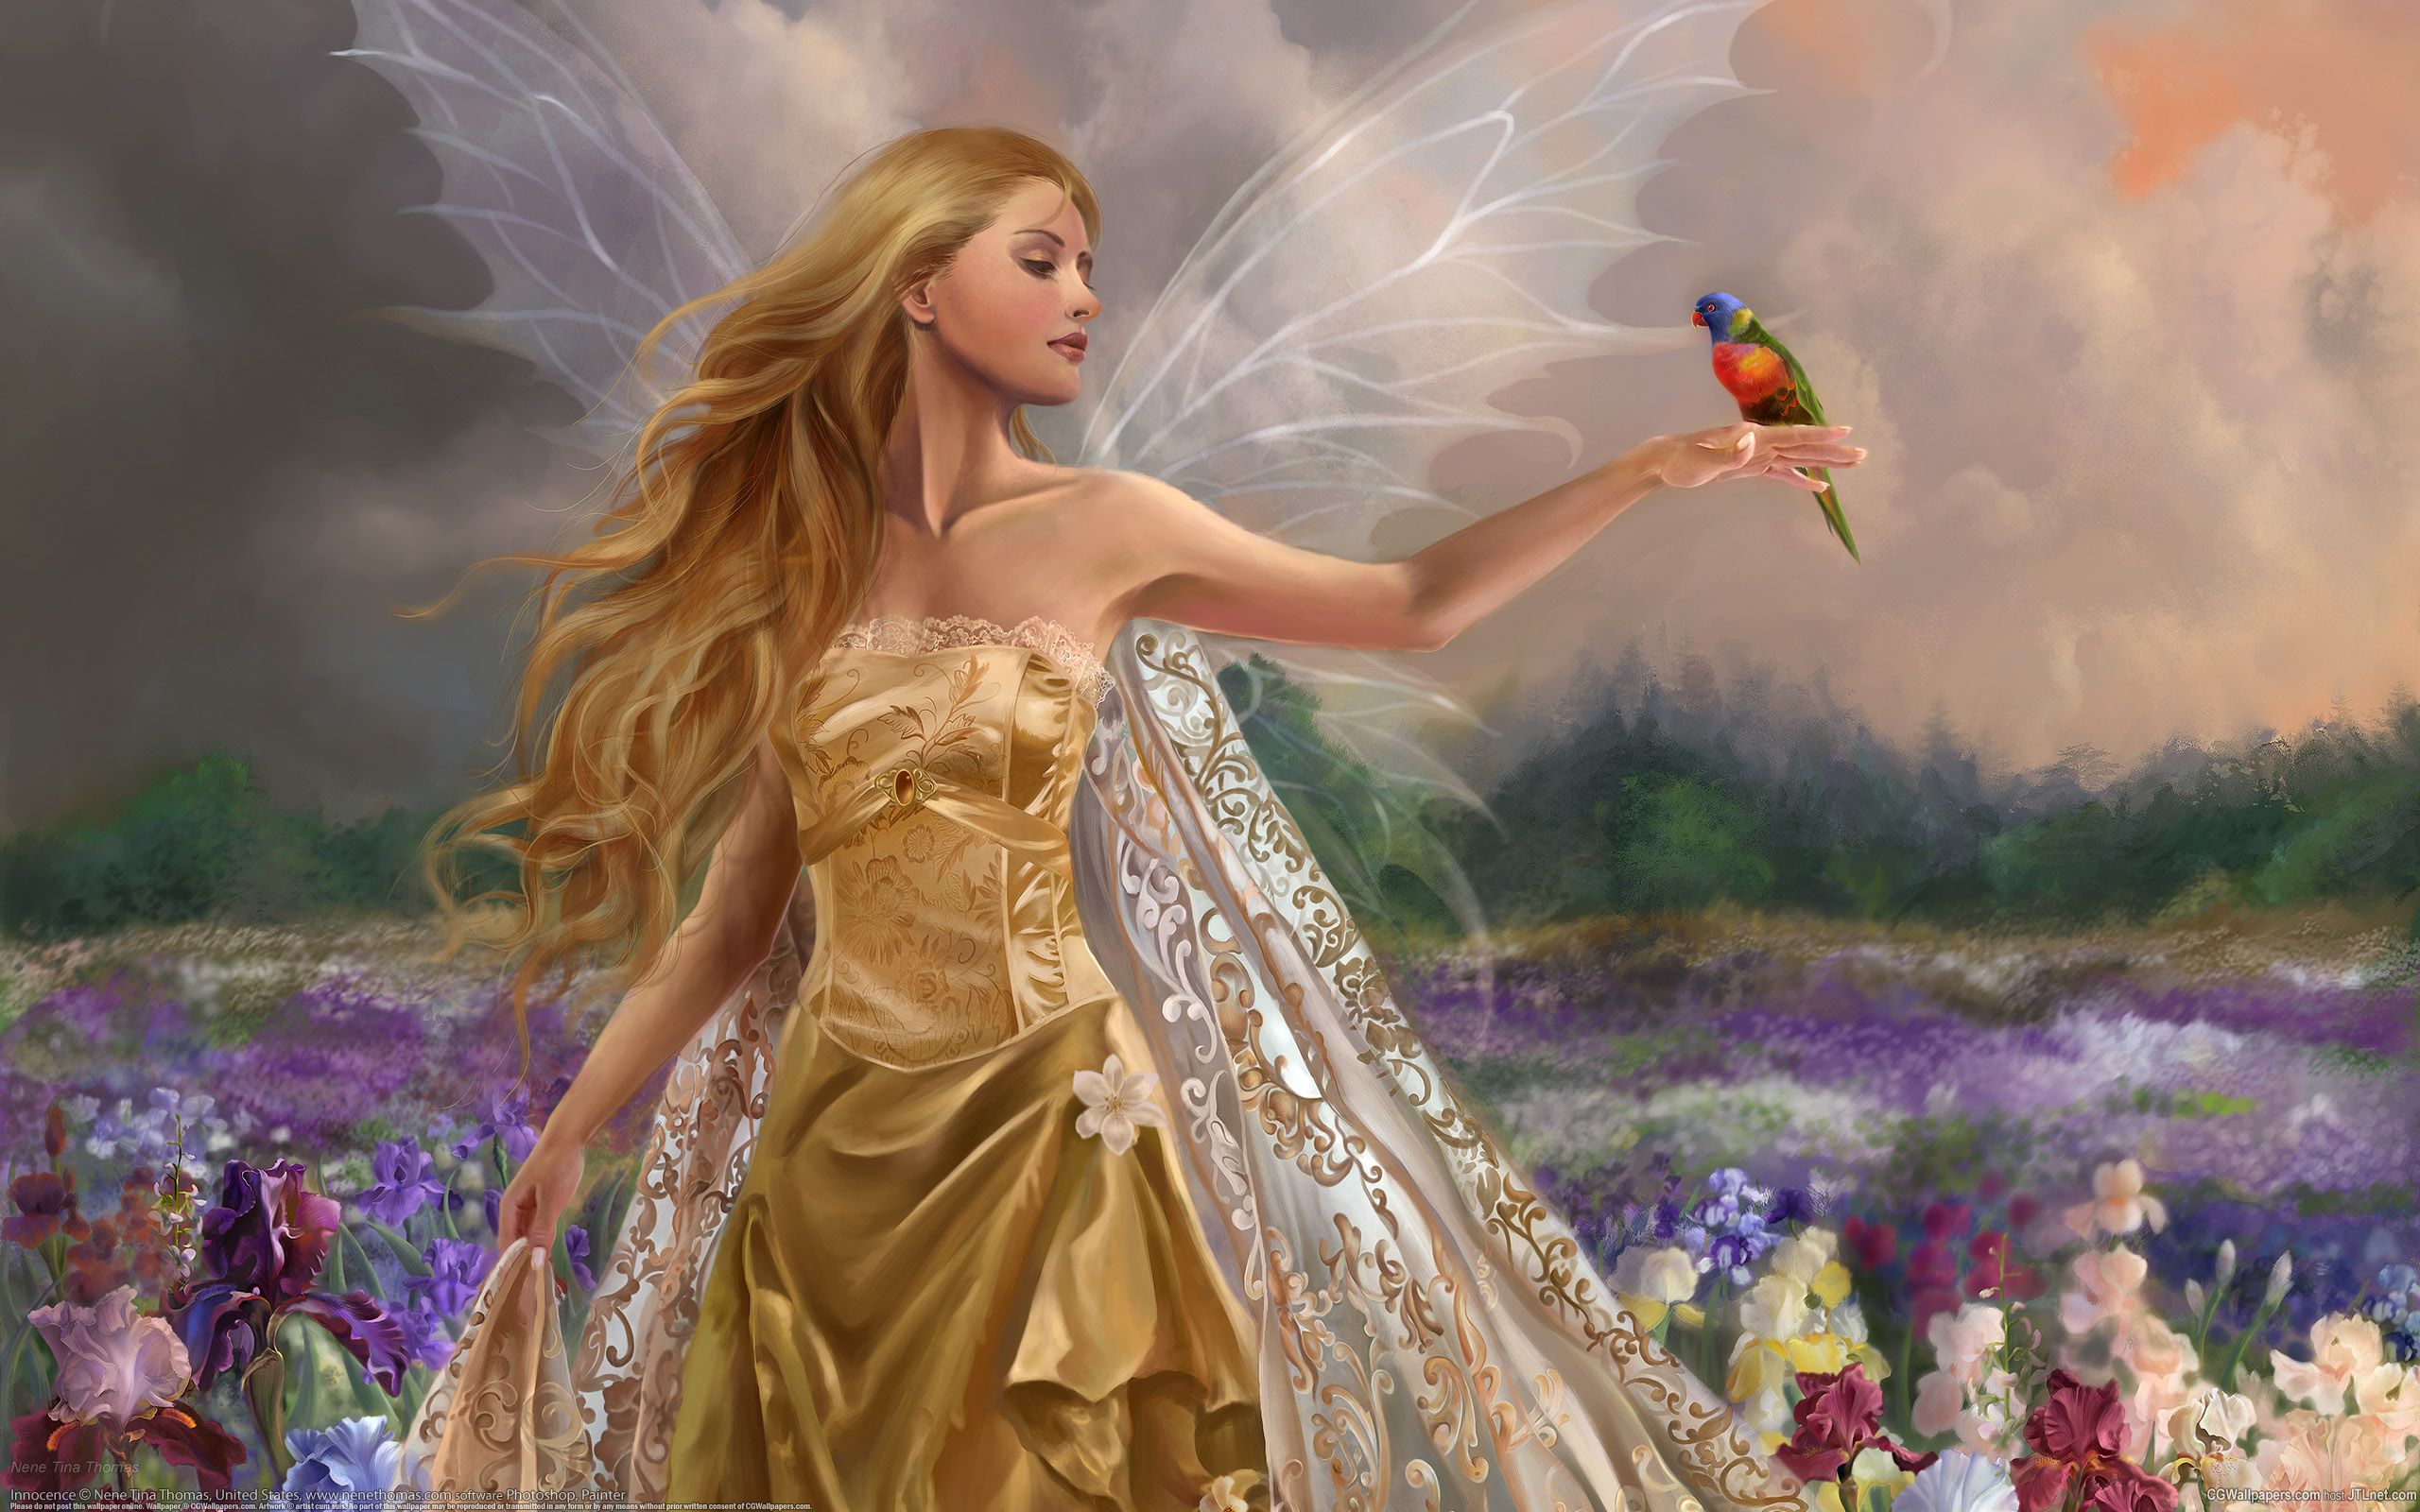 Beautiful Fairy - LOVE ANGELS Wallpaper 27525265 - Fanpop